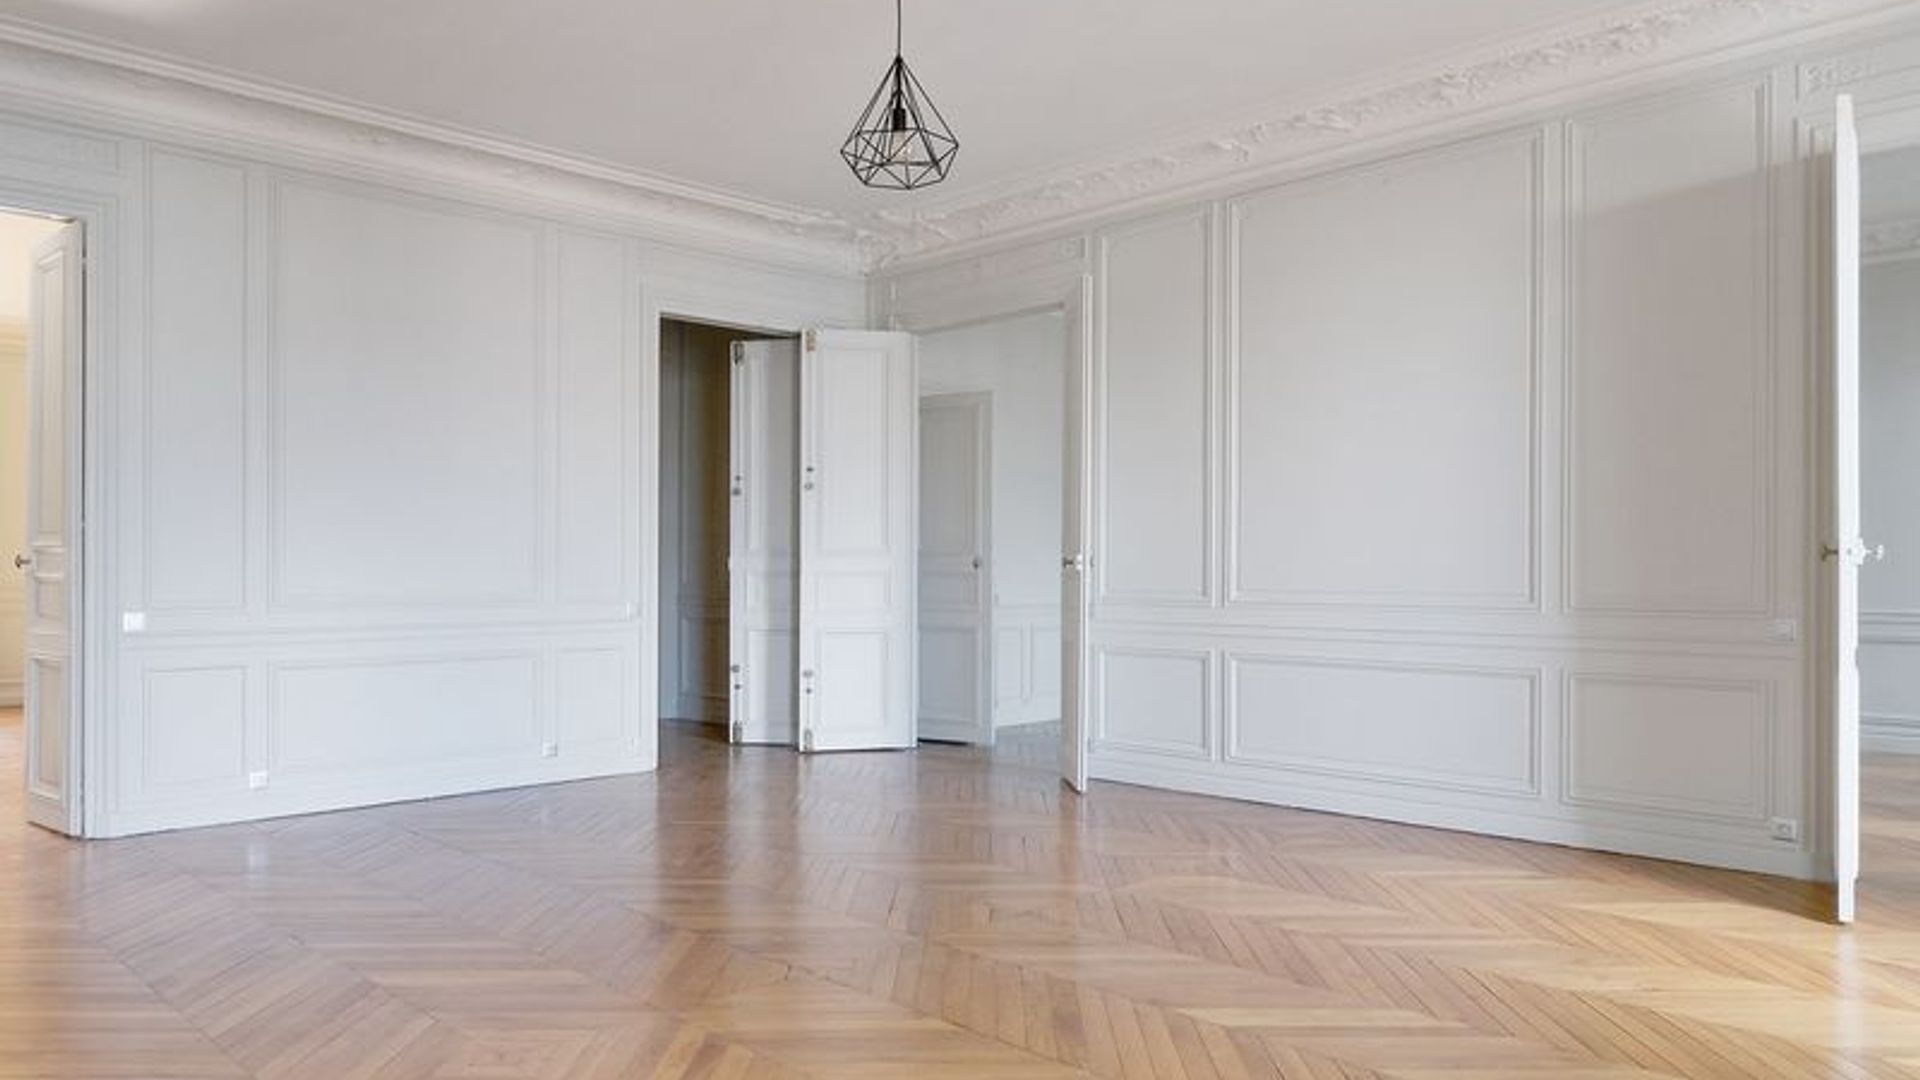 7 bedroom apartment at 23 Rue François 1er, 75008 Paris, France | For ...